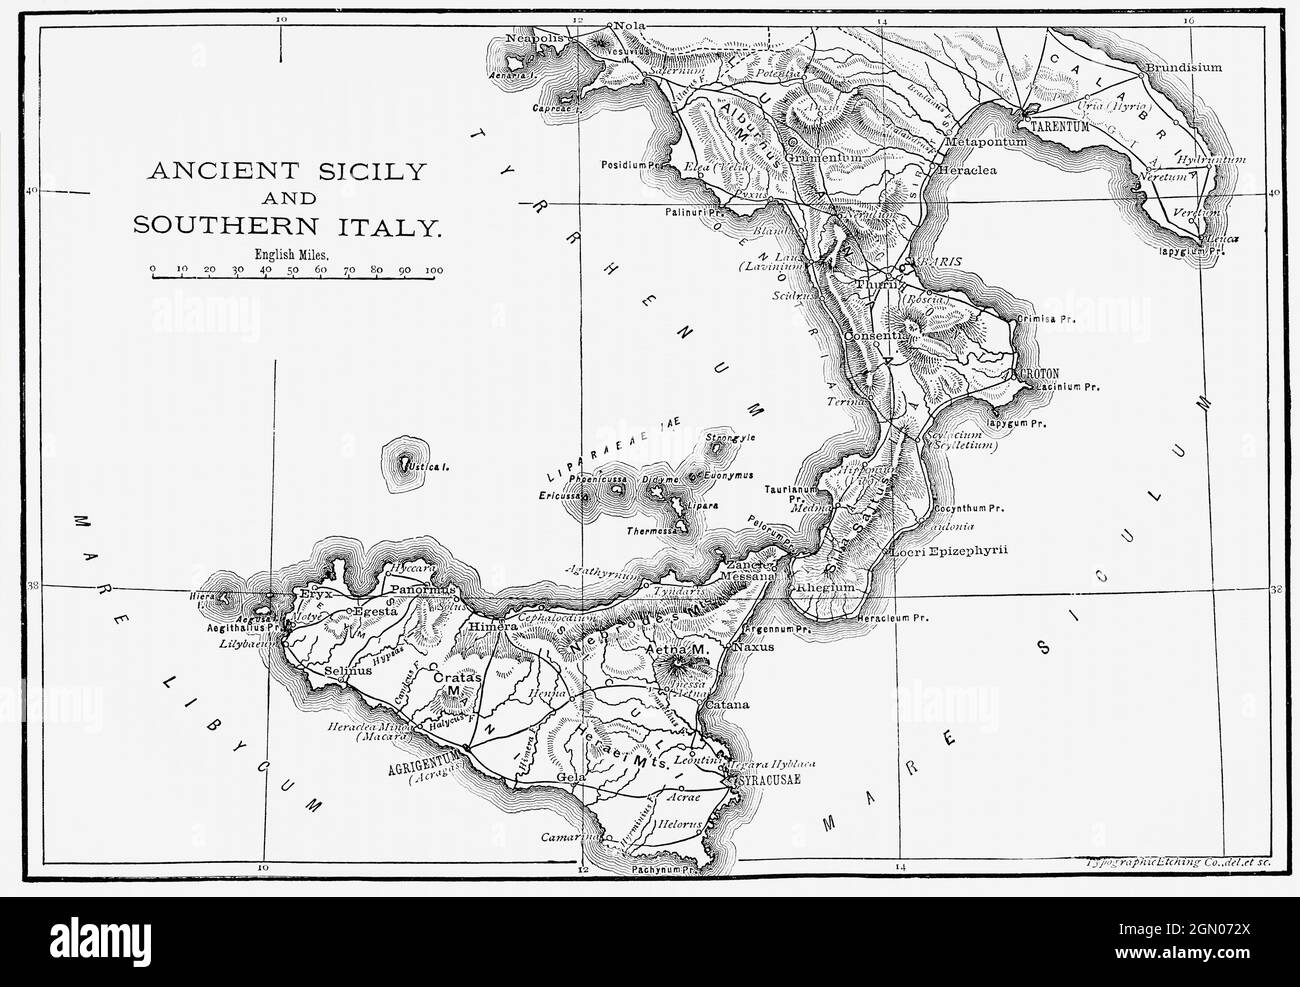 Mappa della Sicilia antica e dell'Italia meridionale, c.228 a.C. Dalla storia universale illustrata di Cassell, pubblicata nel 1883. Foto Stock